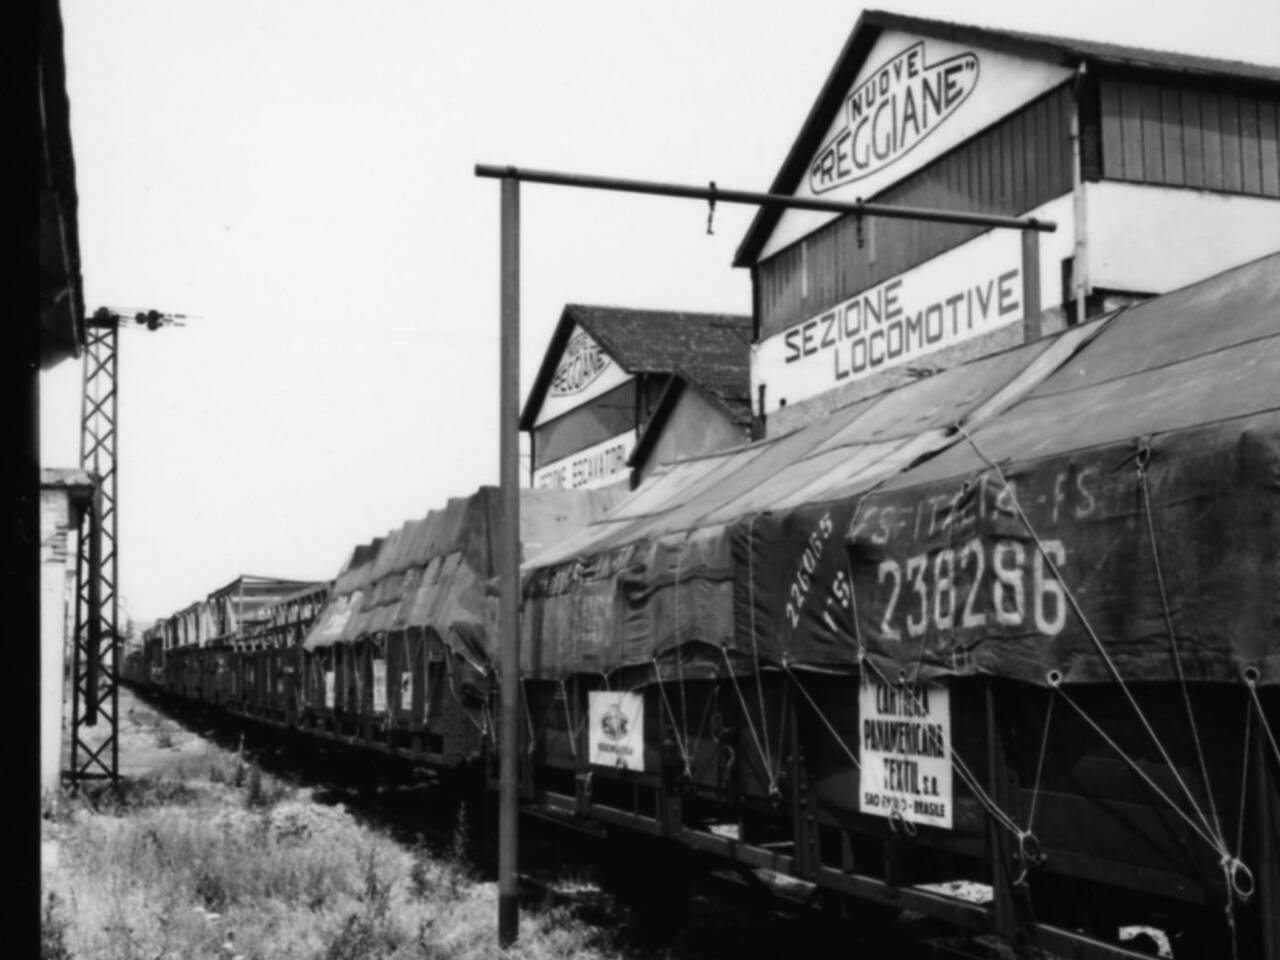 capannone sezione locomotive